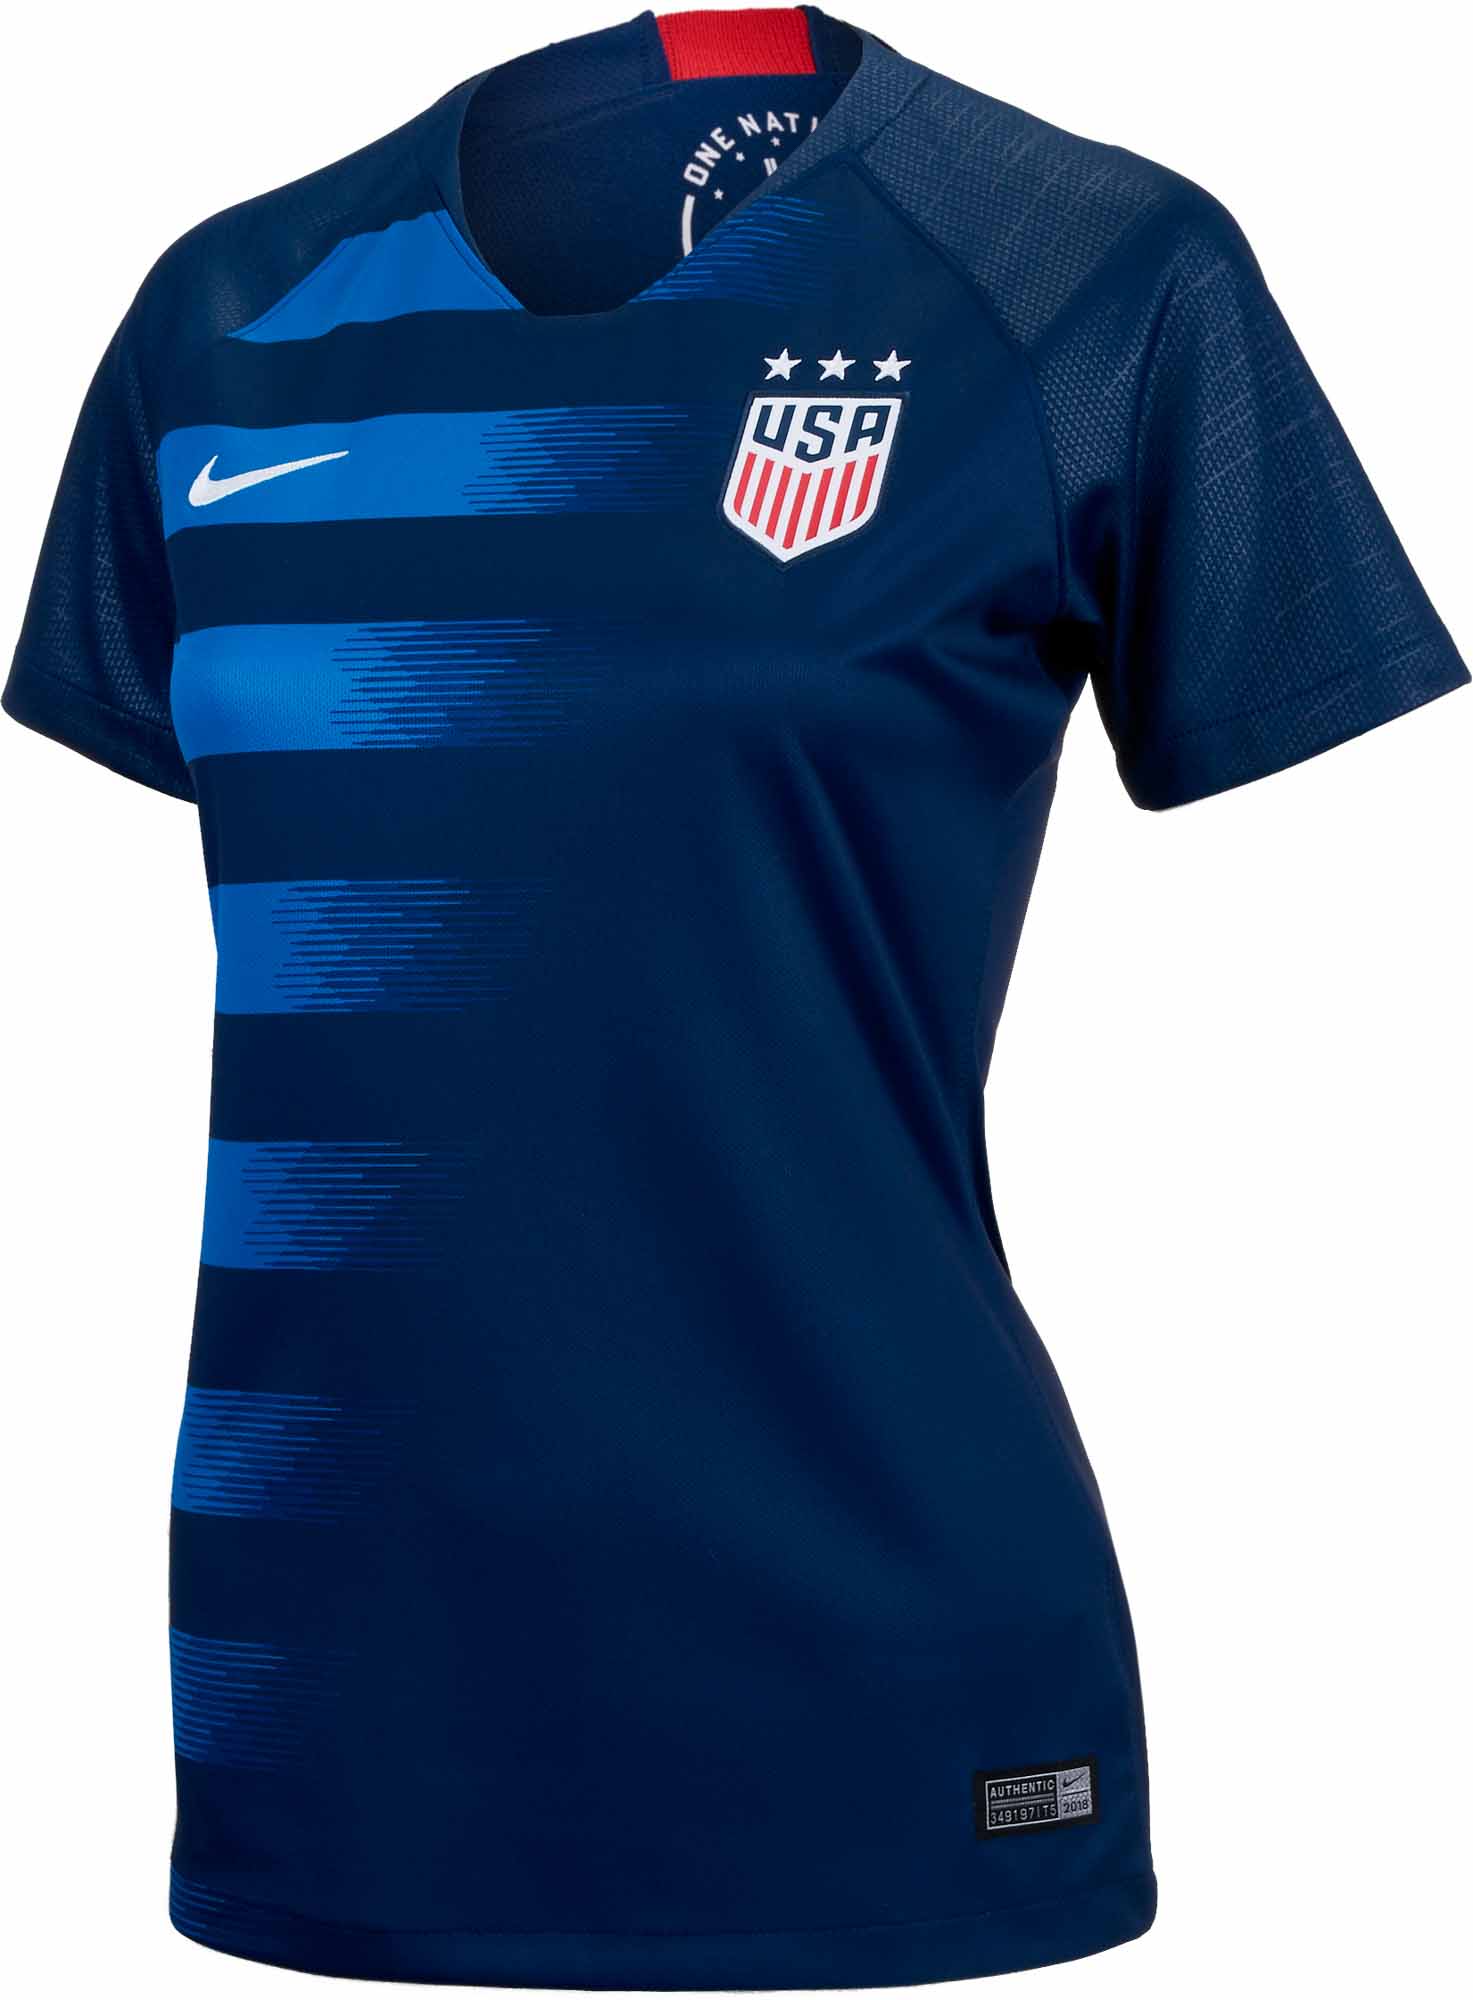 Nike USA Away Jersey - Womens 2018-19 